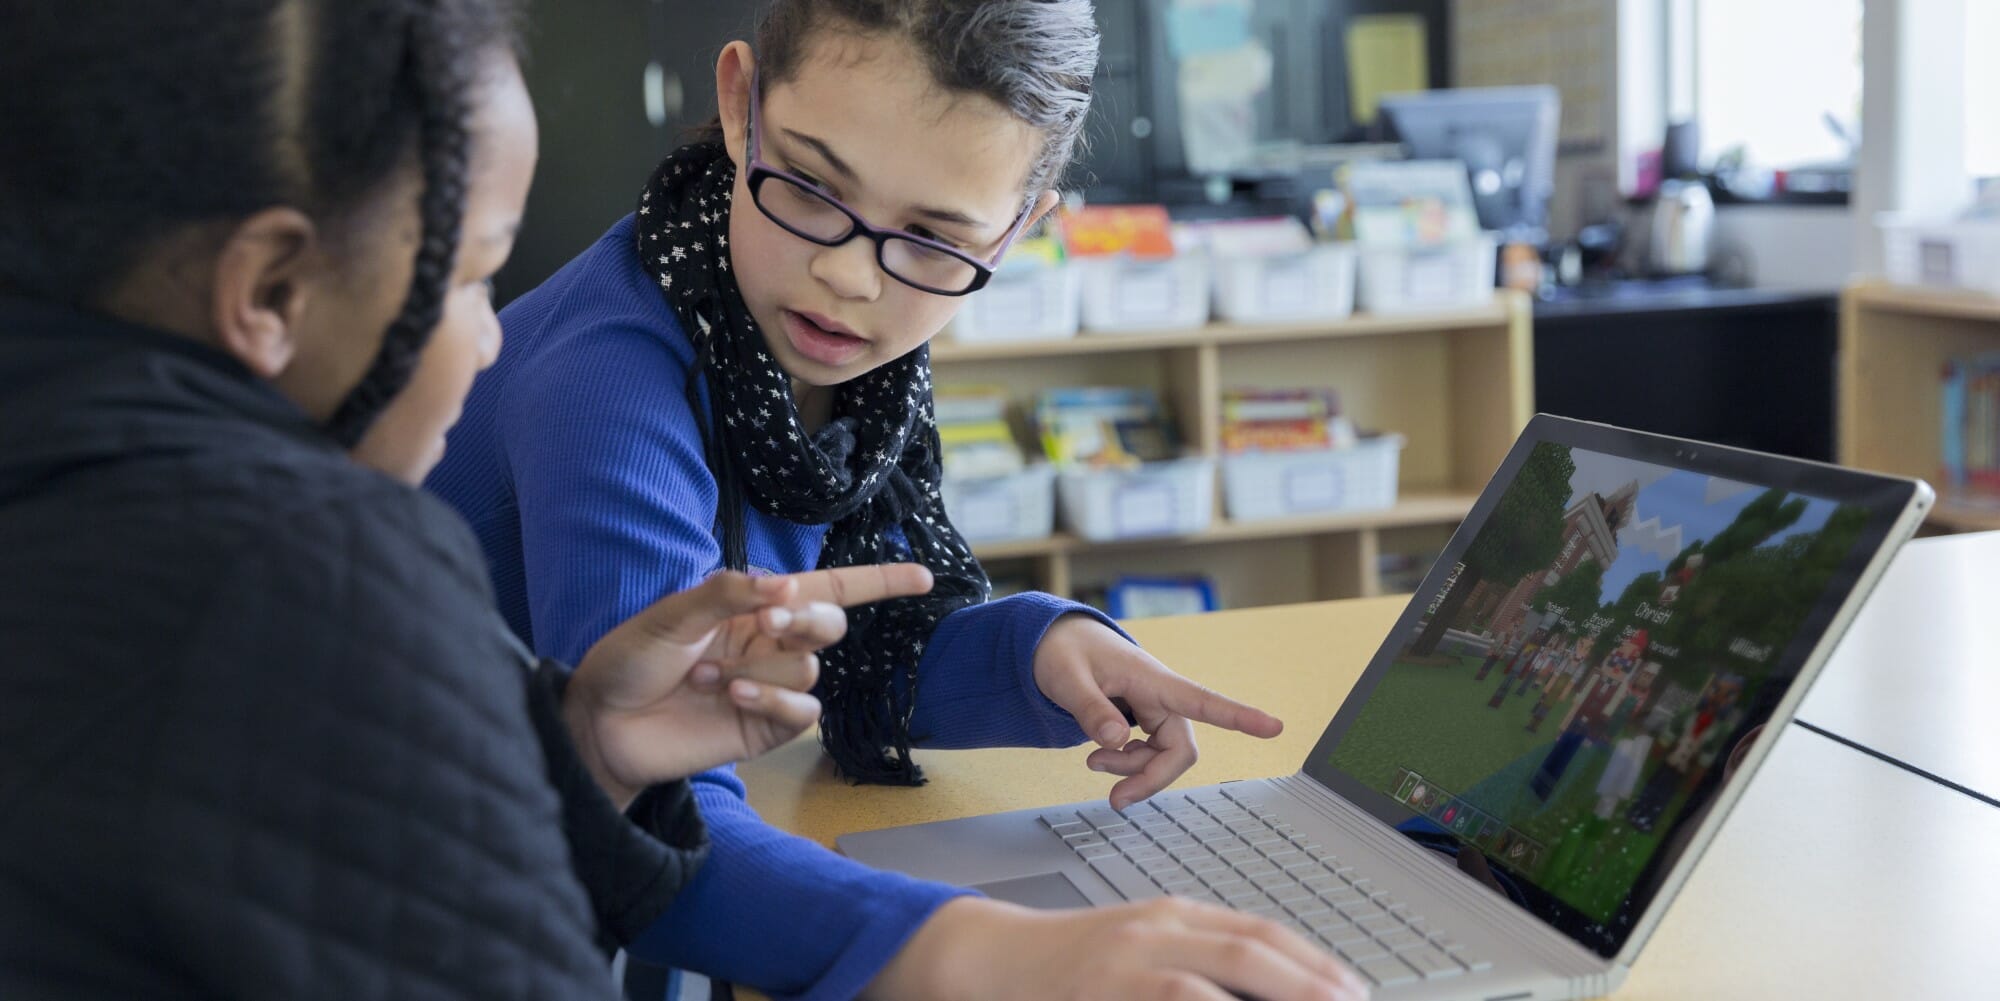 Kaksi nuorta tyttöä pelaa Minecraftia kannettavalla tietokoneella